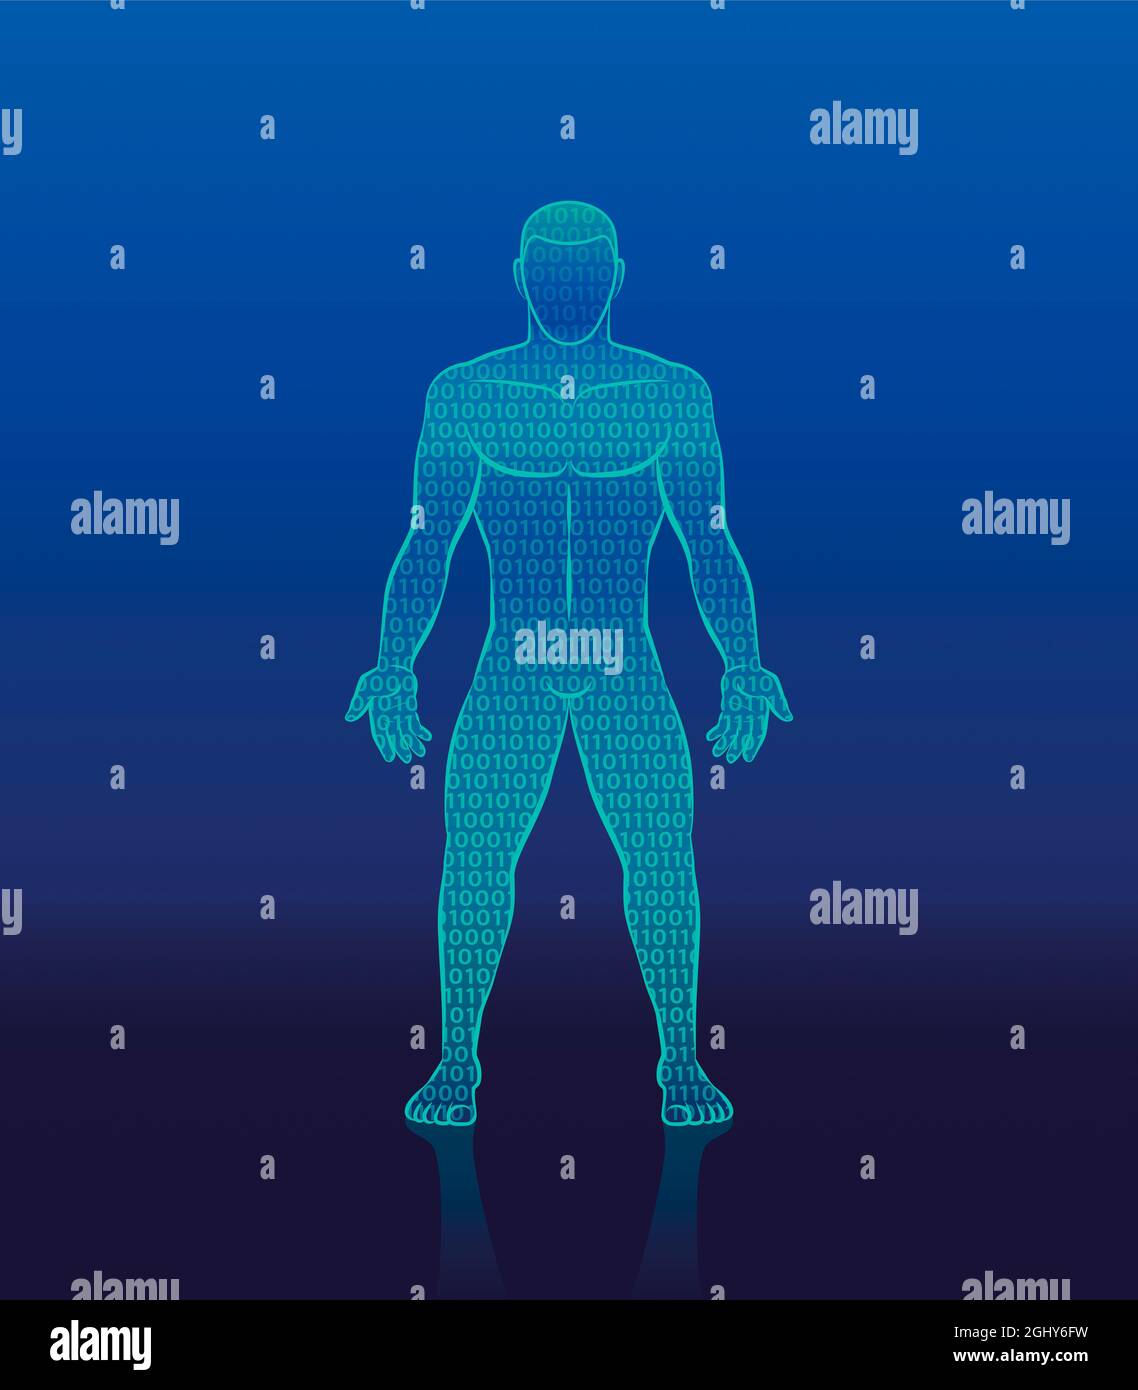 Binärcode Cyber man - digitale menschliche Silhouette mit Einsen und Nullen zusammengesetzt - Symbol für künstliche Intelligenz, Kybernetik, Bionik Robotik. Stockfoto